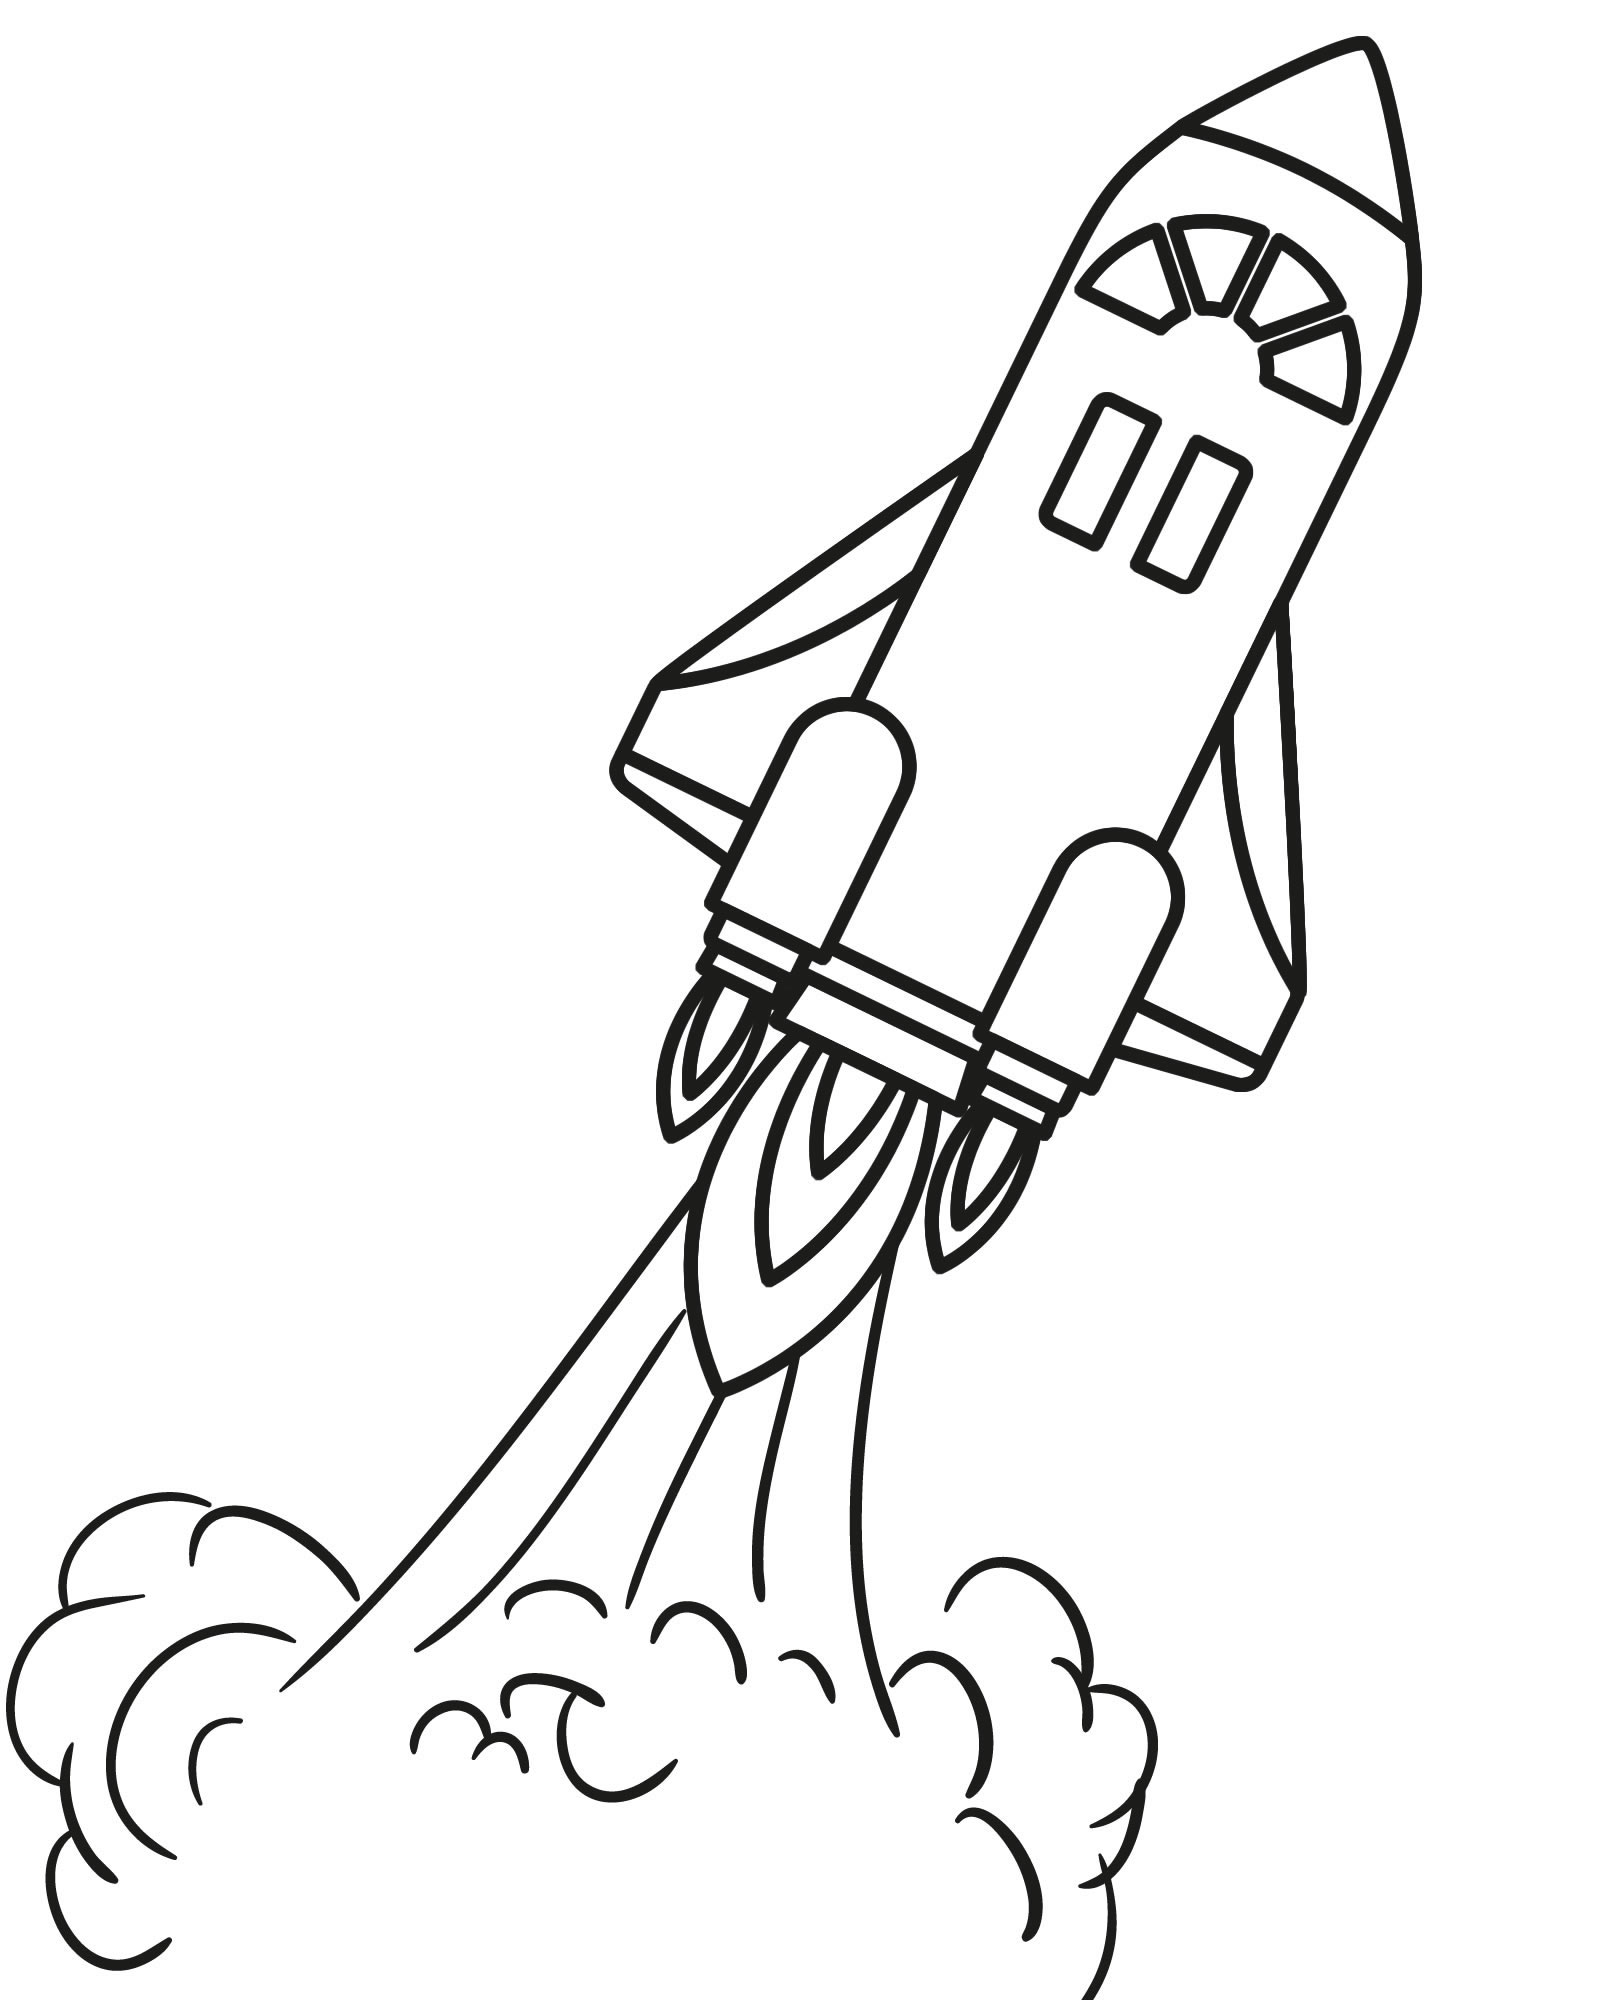 Деревянная модель-раскраска для детей UGears Ракета (Rocket)